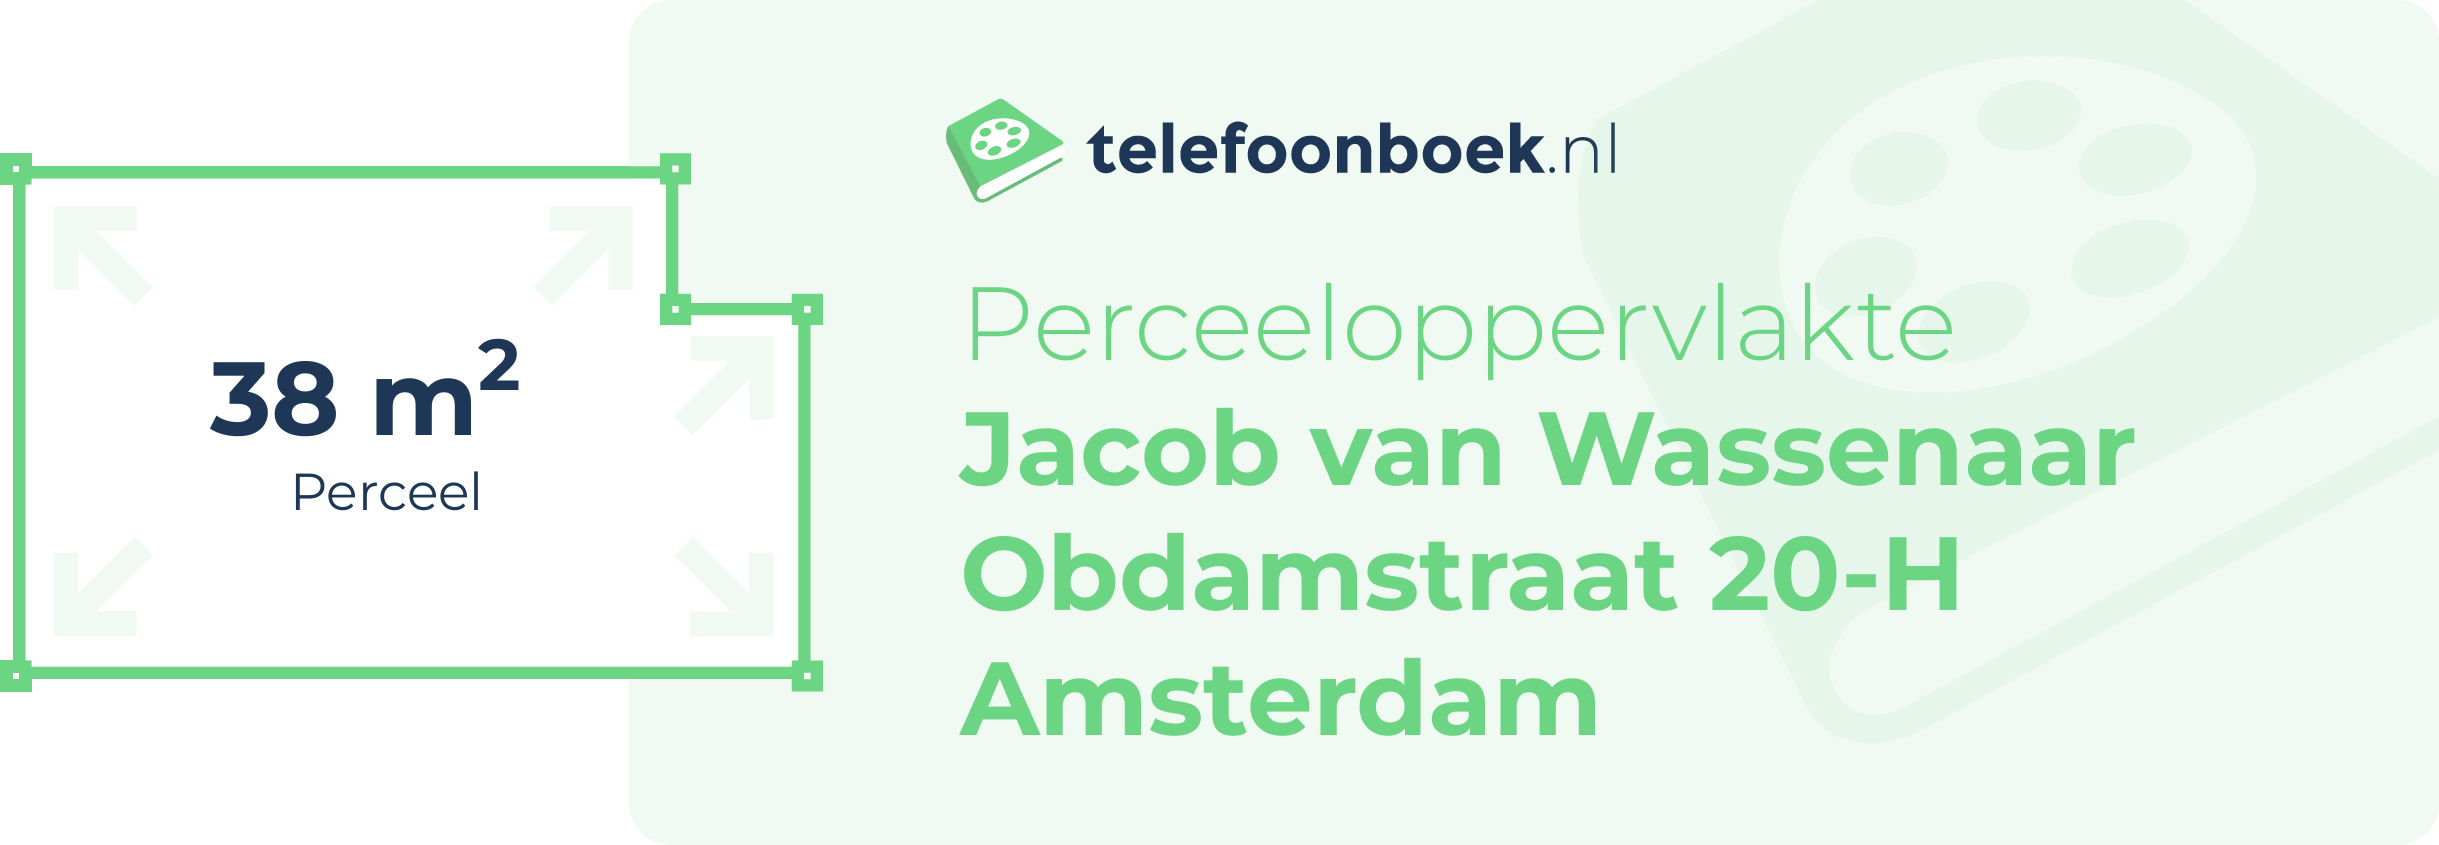 Perceeloppervlakte Jacob Van Wassenaar Obdamstraat 20-H Amsterdam